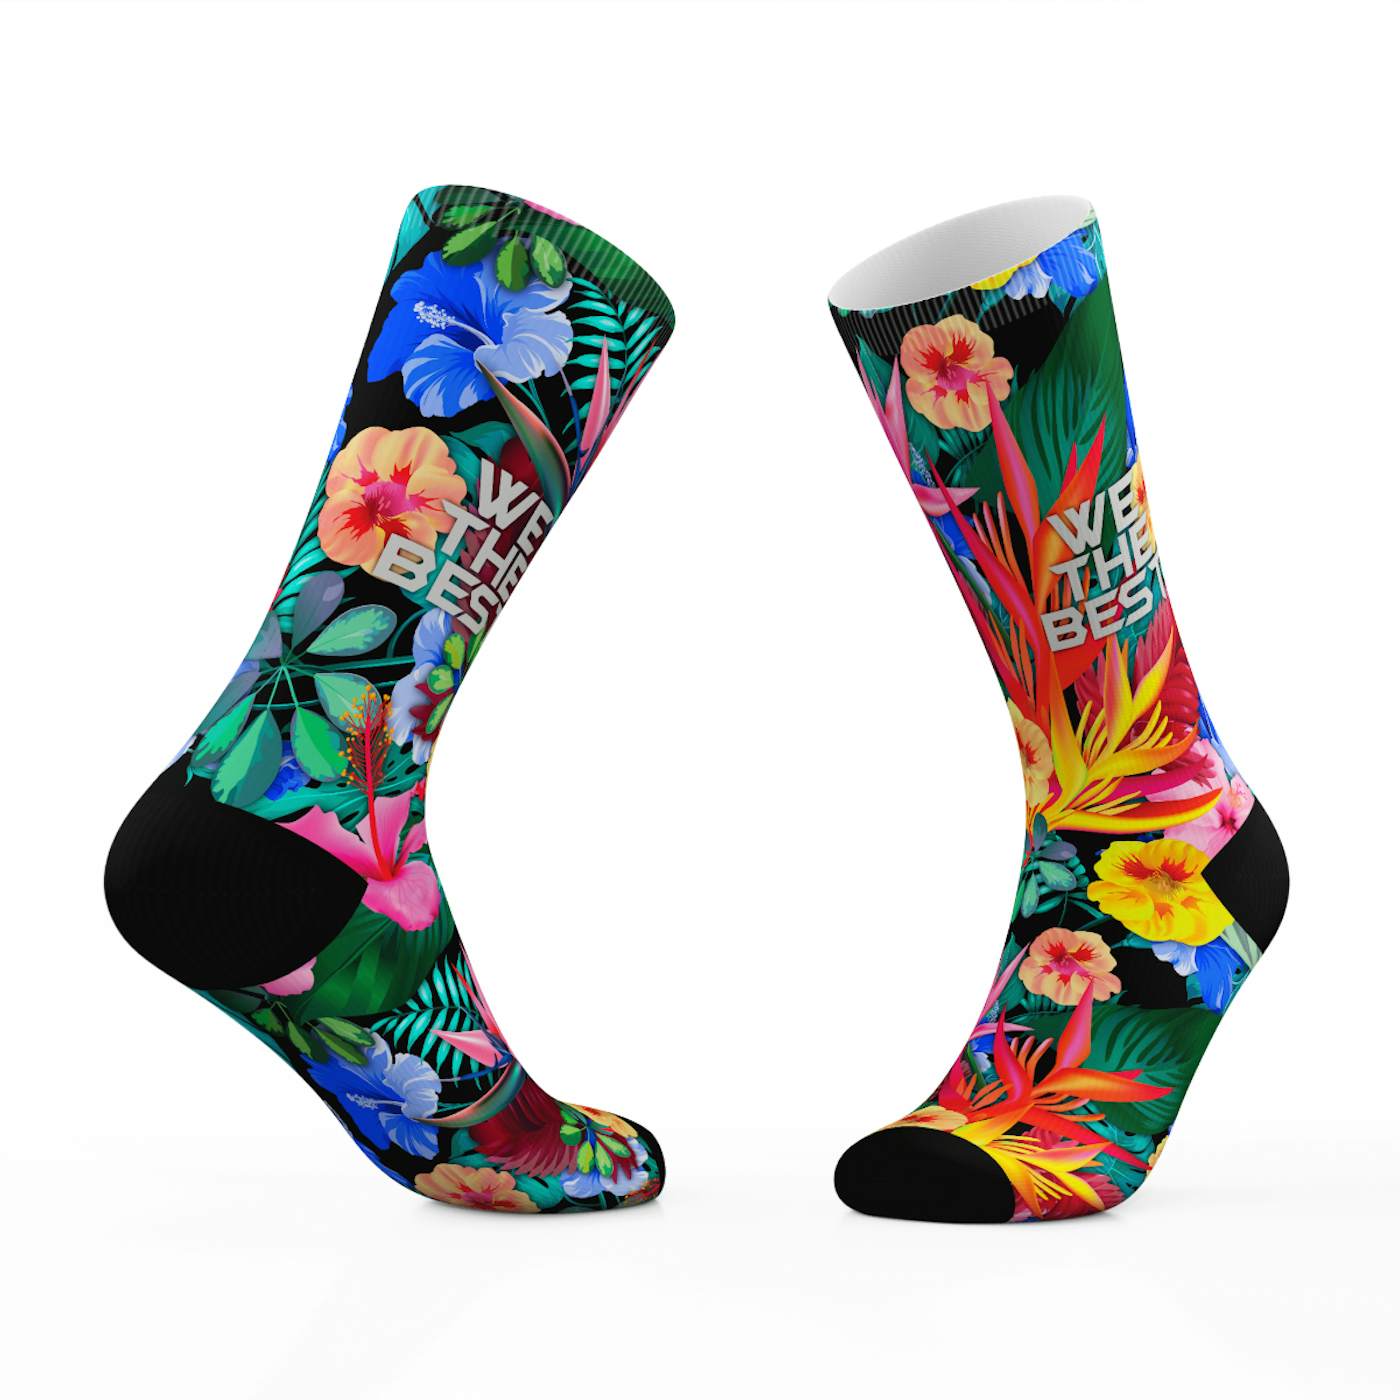 DJ Khaled Floral We The Best Tribe Socks